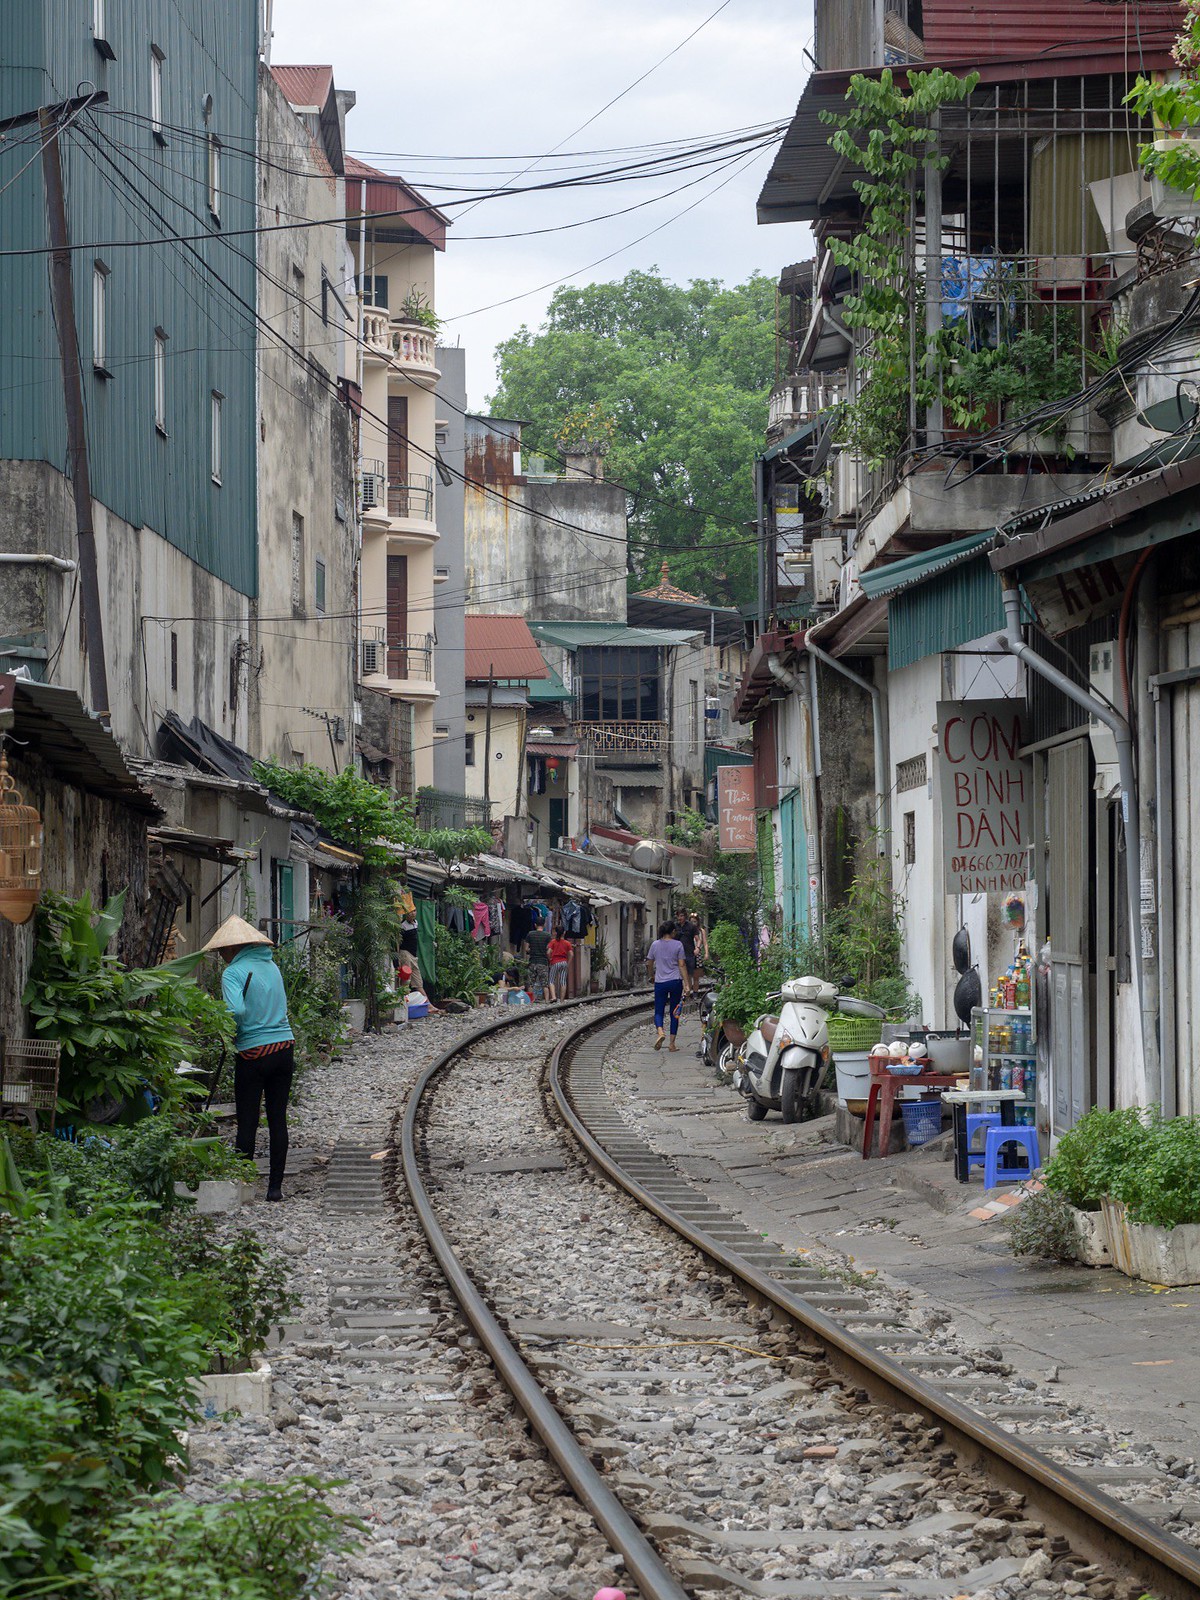 Hanoi railway in the city